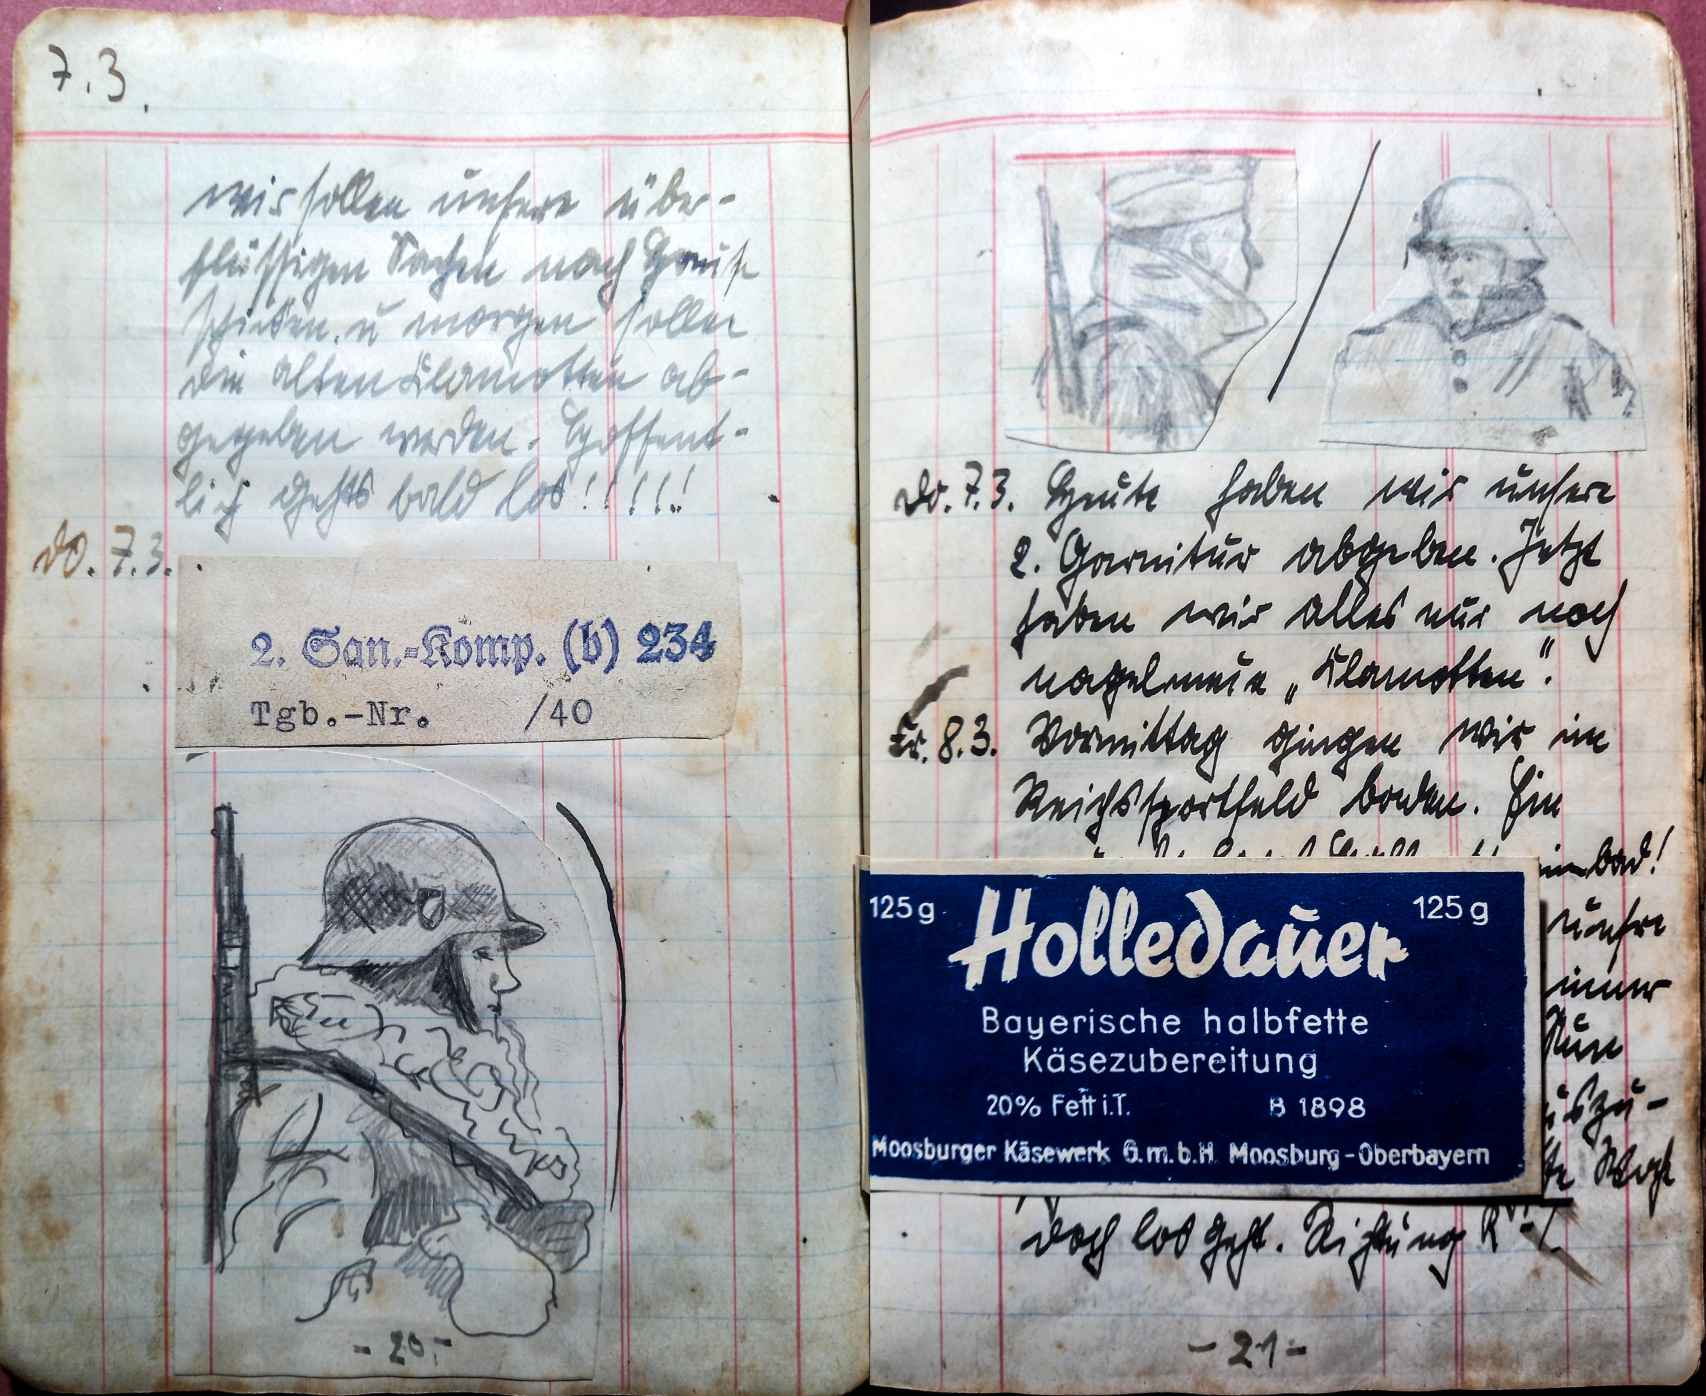 Hojas del diario del soldado nazi encontrado.